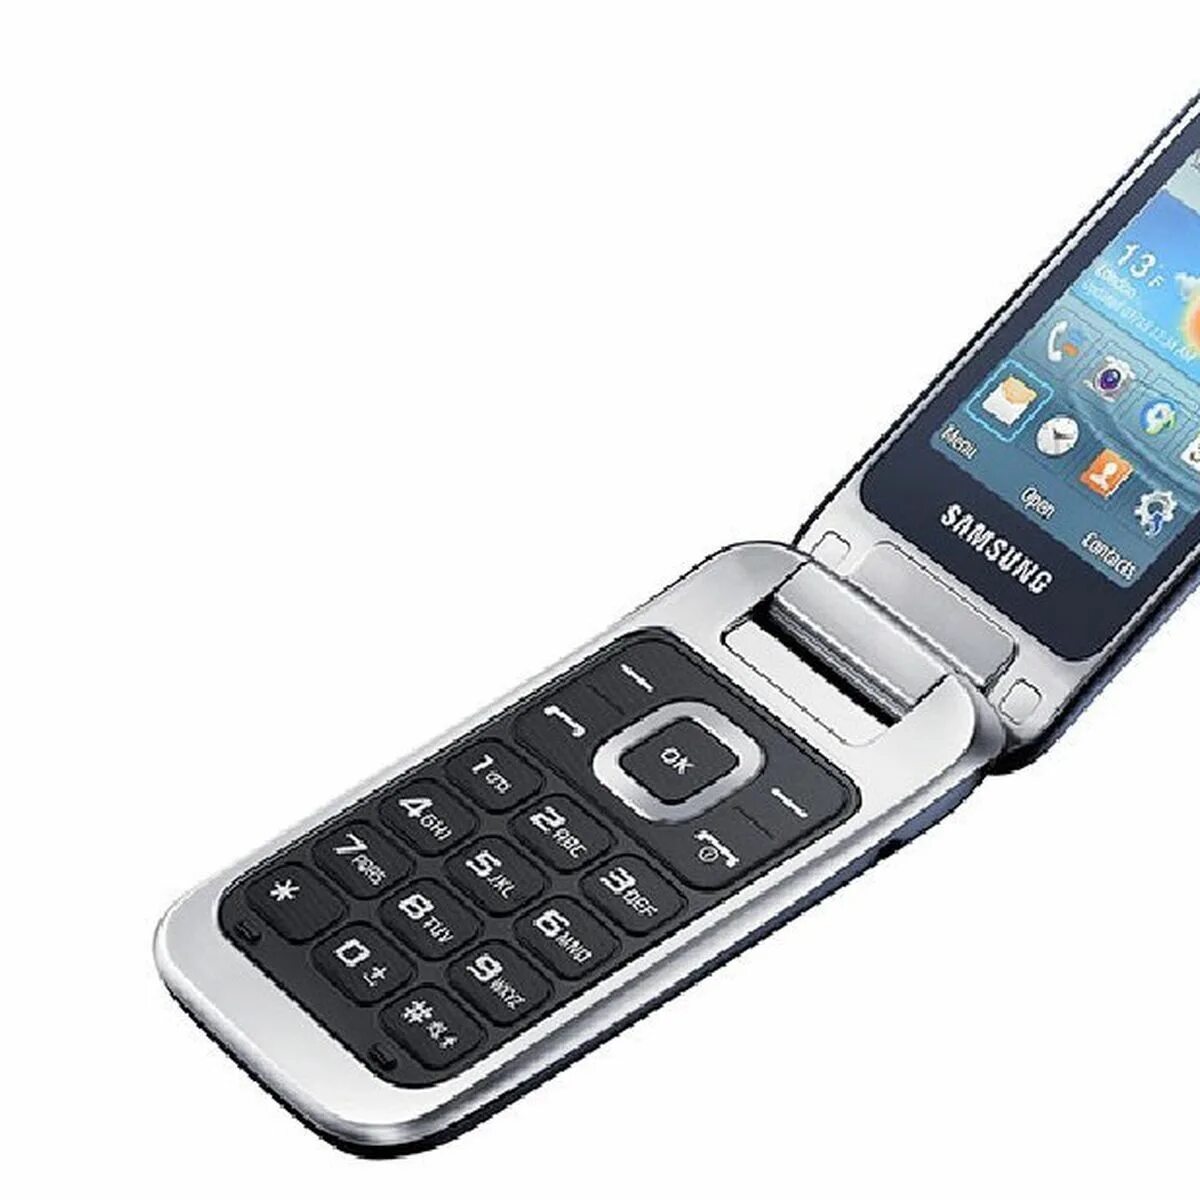 Самсунг раскладушка gt-c3592. Телефон самсунг gt-c3595. Samsung Flip. Samsung gt-c3595 Black. Старые модели раскладушек